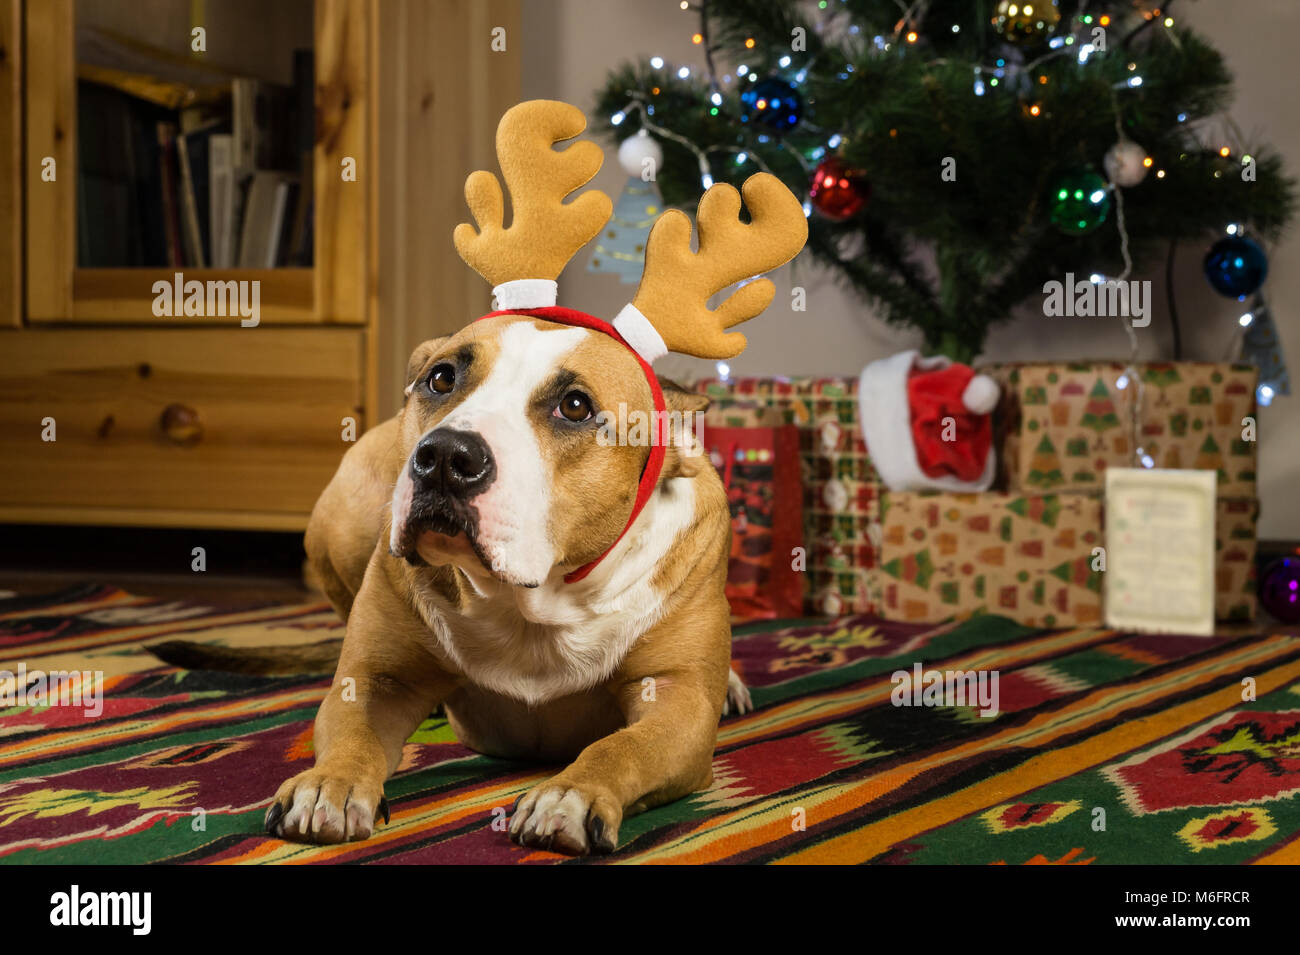 Staffordshire Terrier Hund mit Rentier Hörner ruht auf dem Teppich im Wohnzimmer neben geschmückten Weihnachtsbaum und verpackte Geschenke und Grußkarten Stockfoto